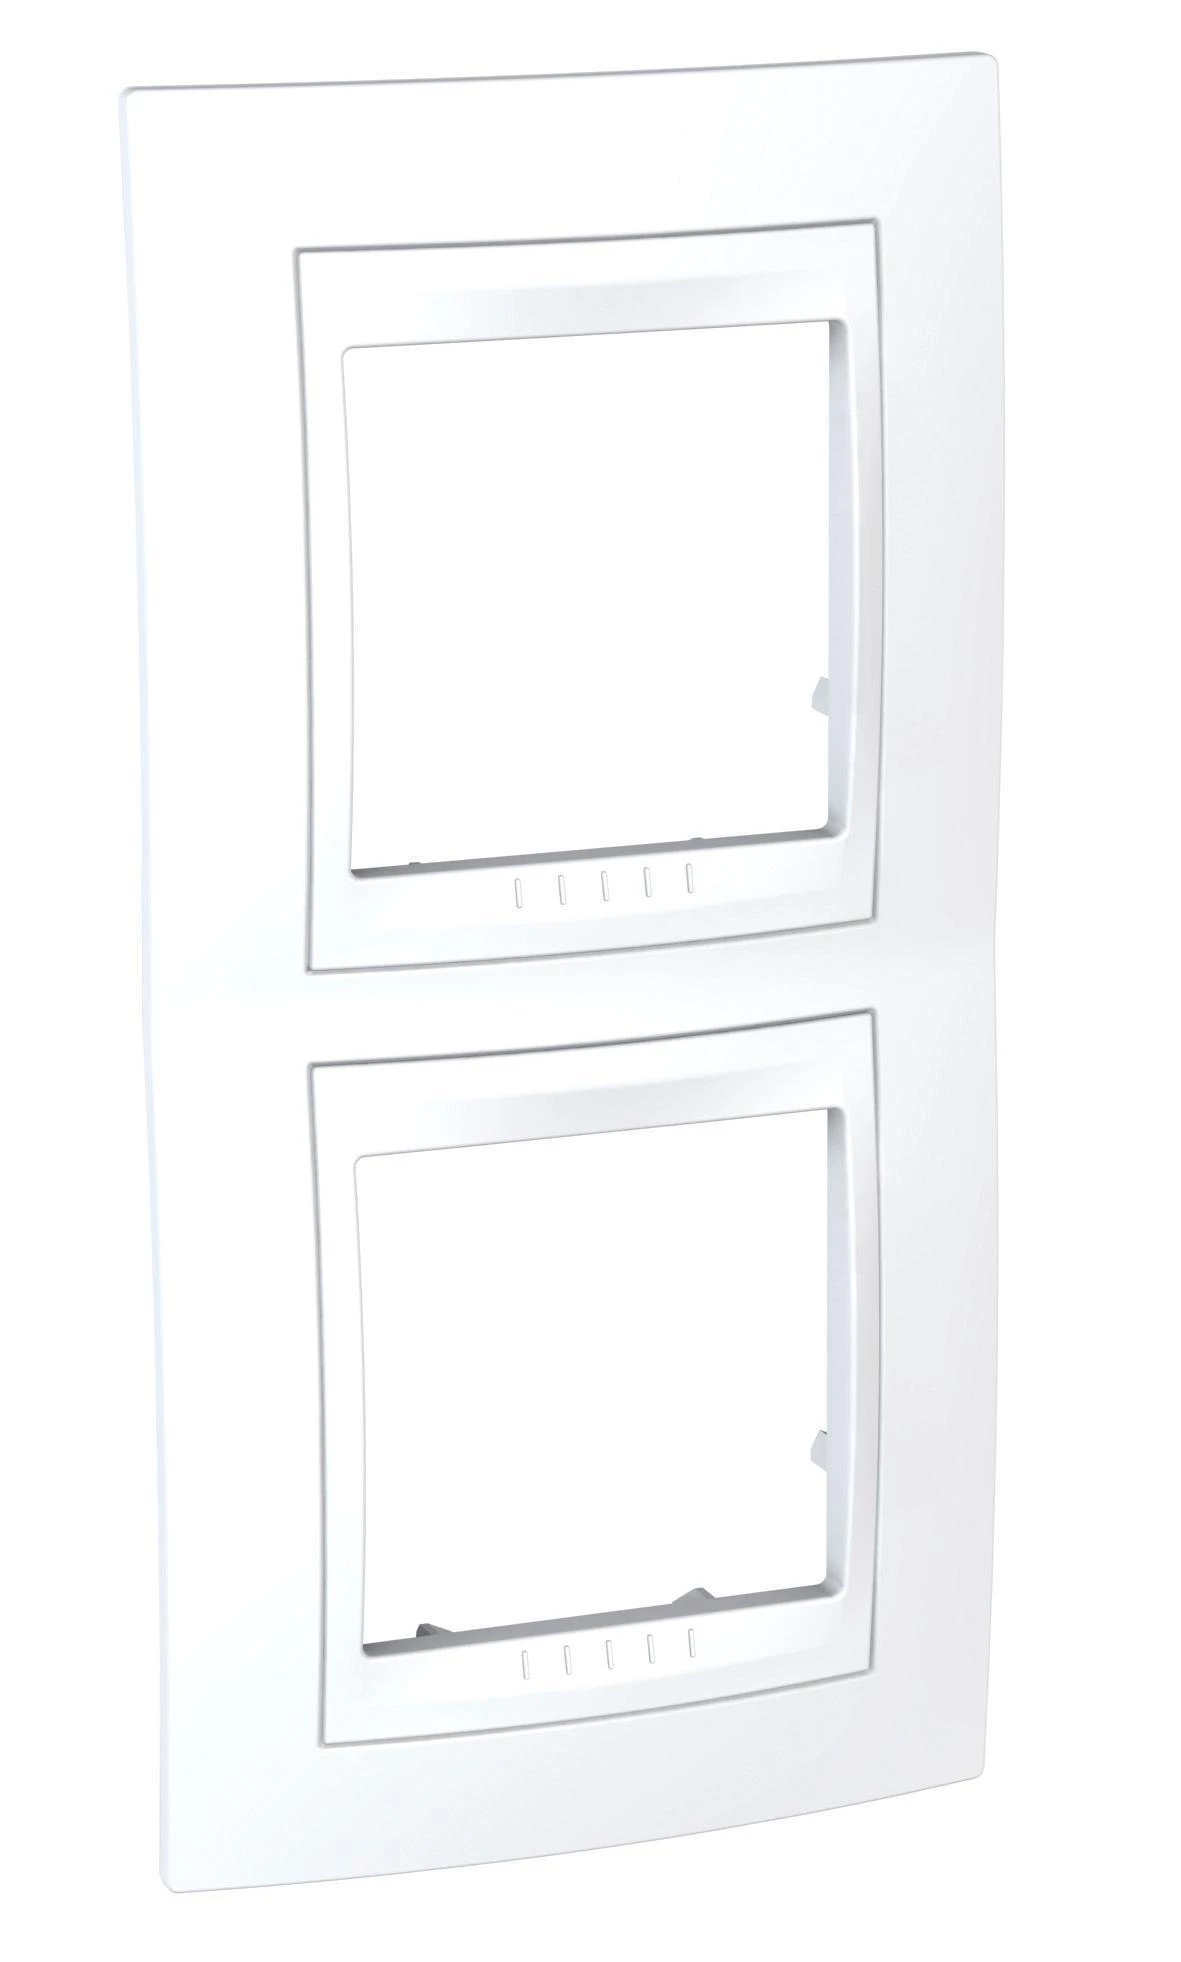  артикул MGU6.004V.18 название Рамка 2-ая (двойная) вертикальная , Белый, серия Unica, Schneider Electric